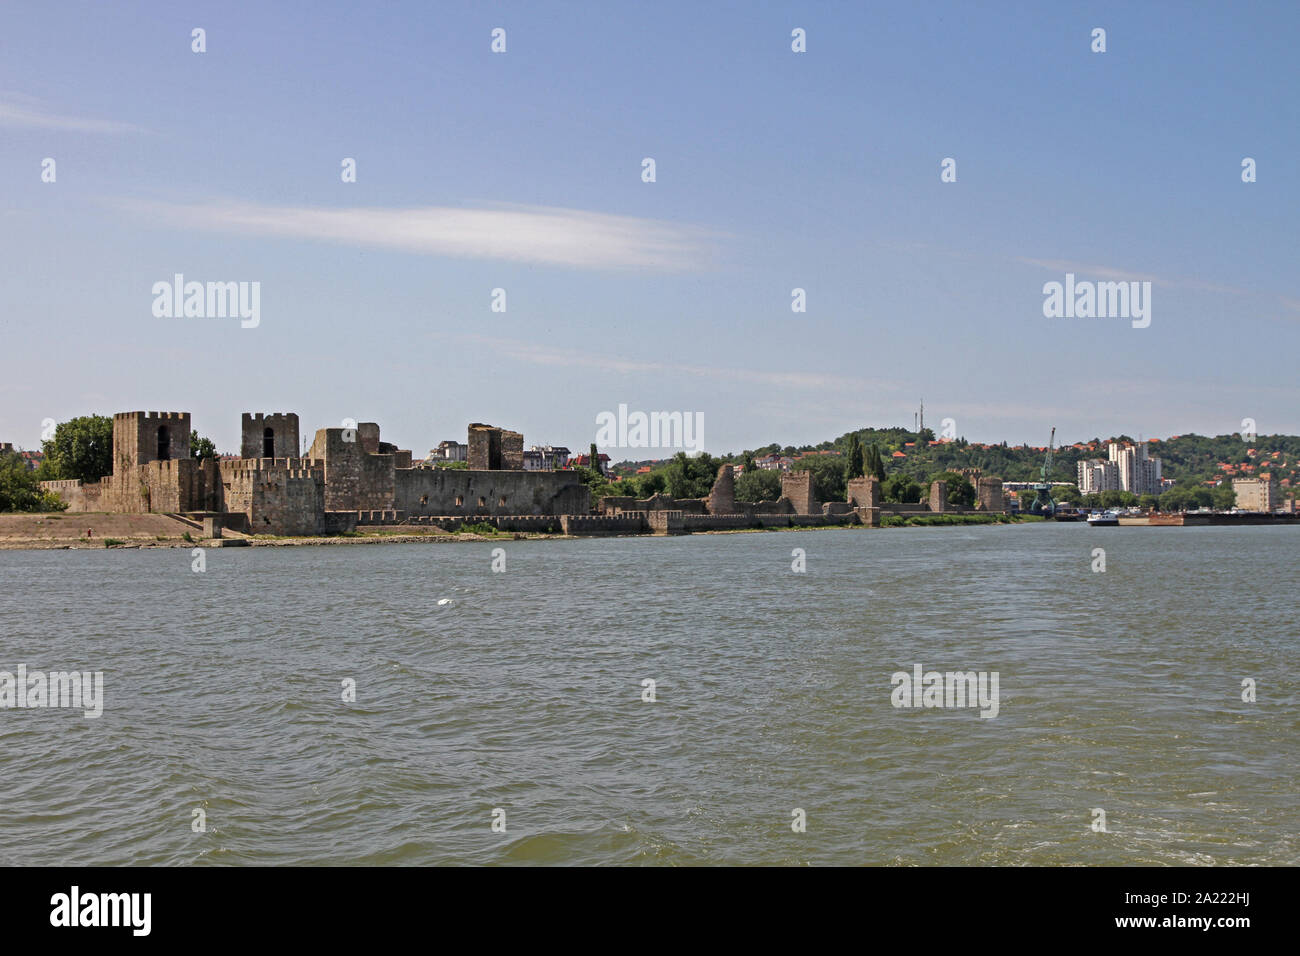 Smederevo Festung am Ufer der Donau, Smederevo, Serbien. Stockfoto